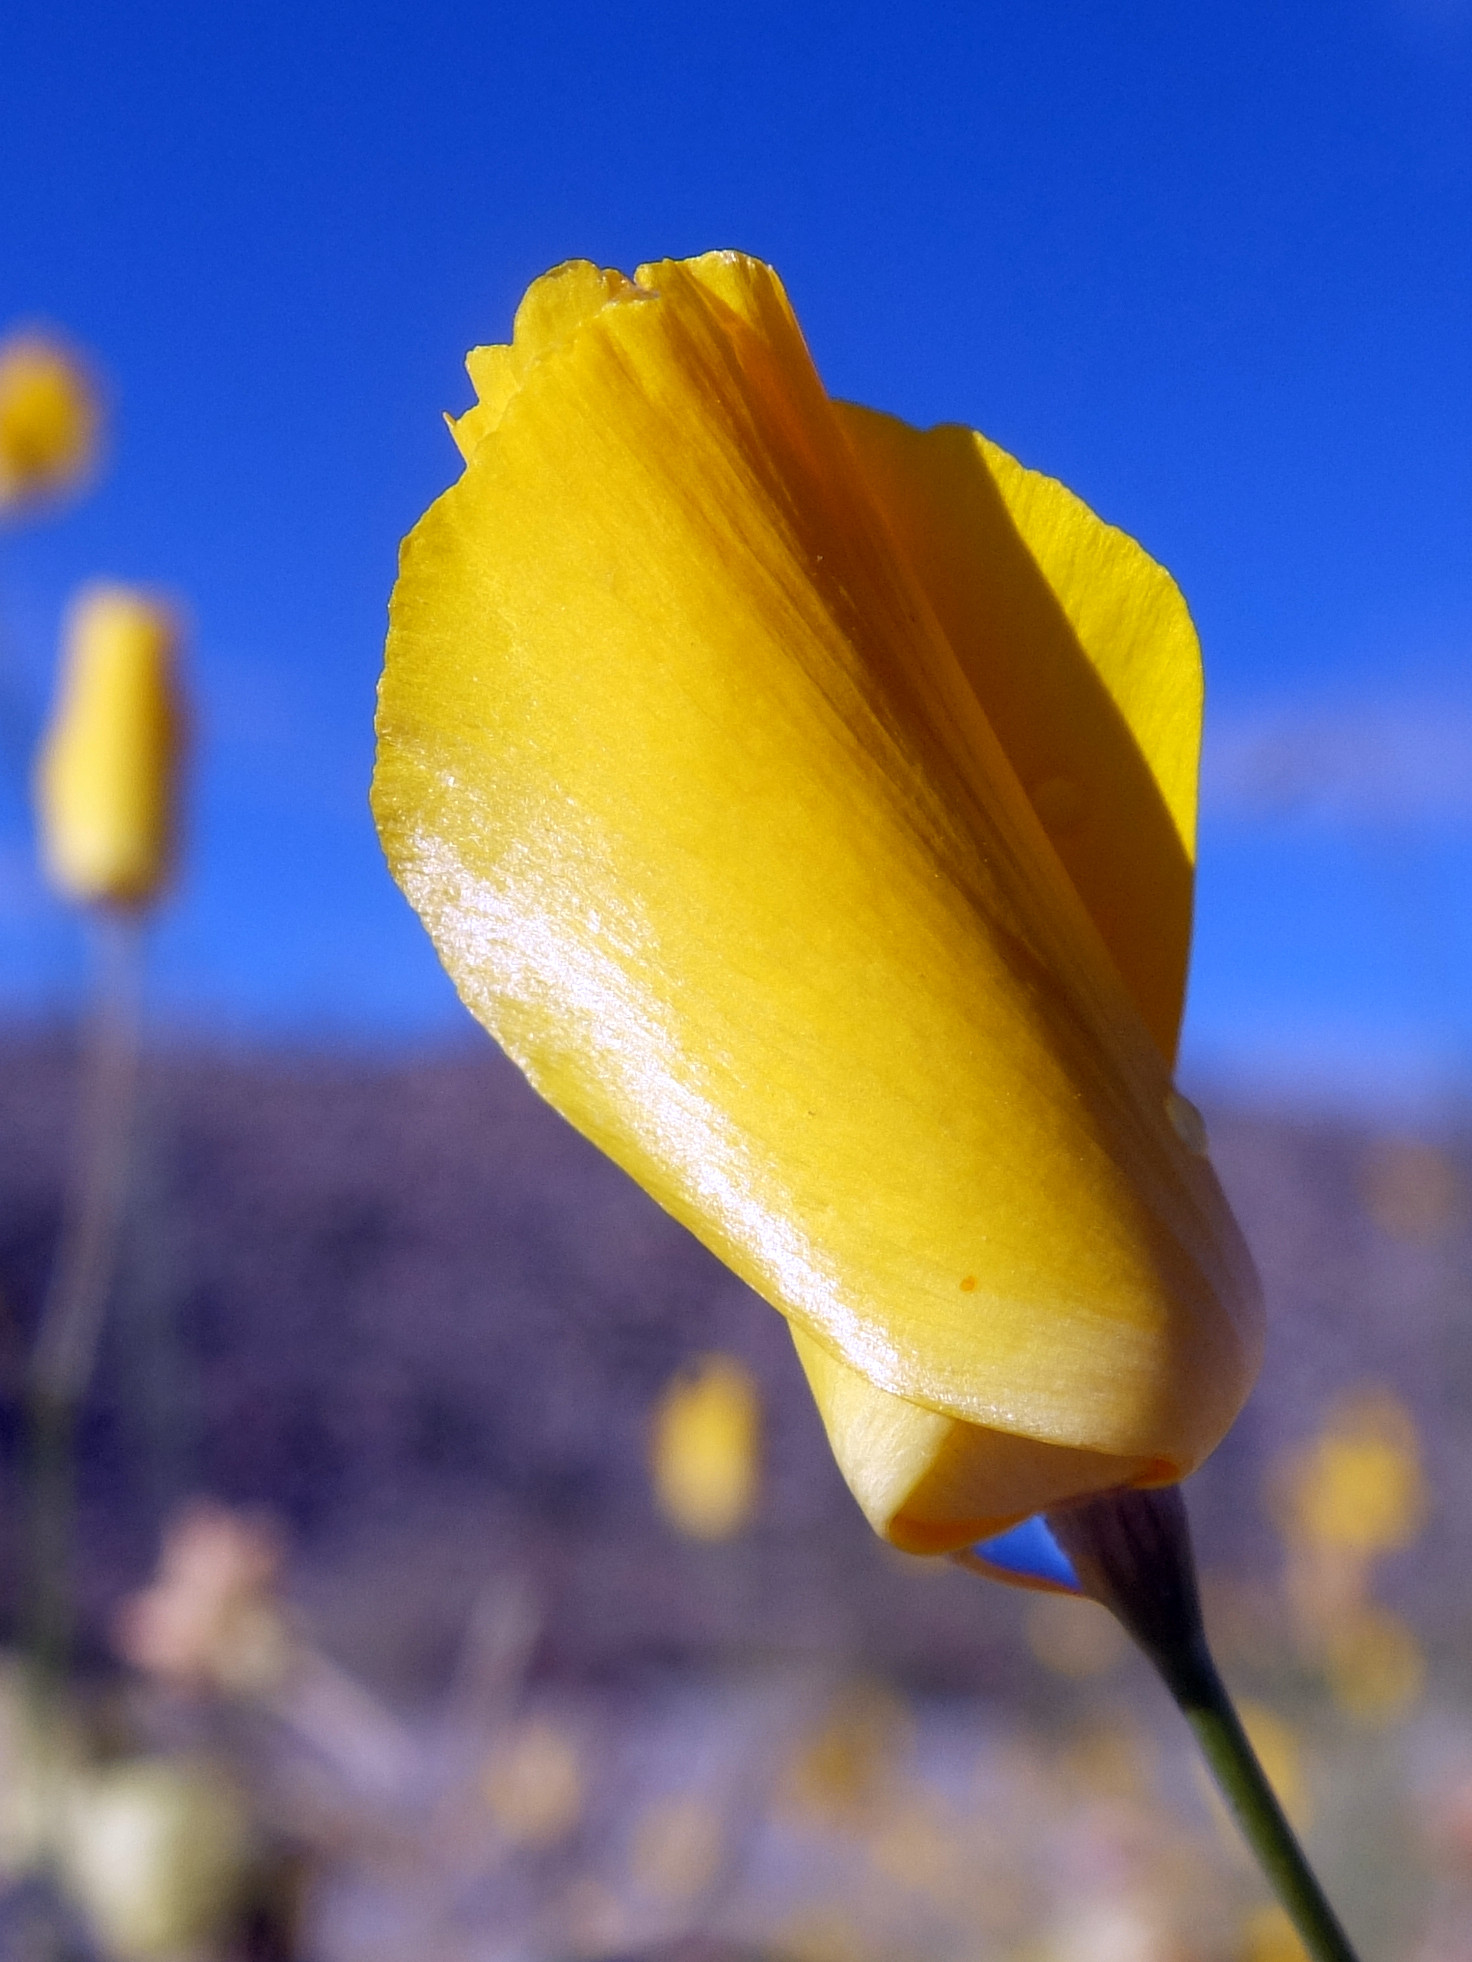 California Poppy in Anza-Borrego State Park, March 2019